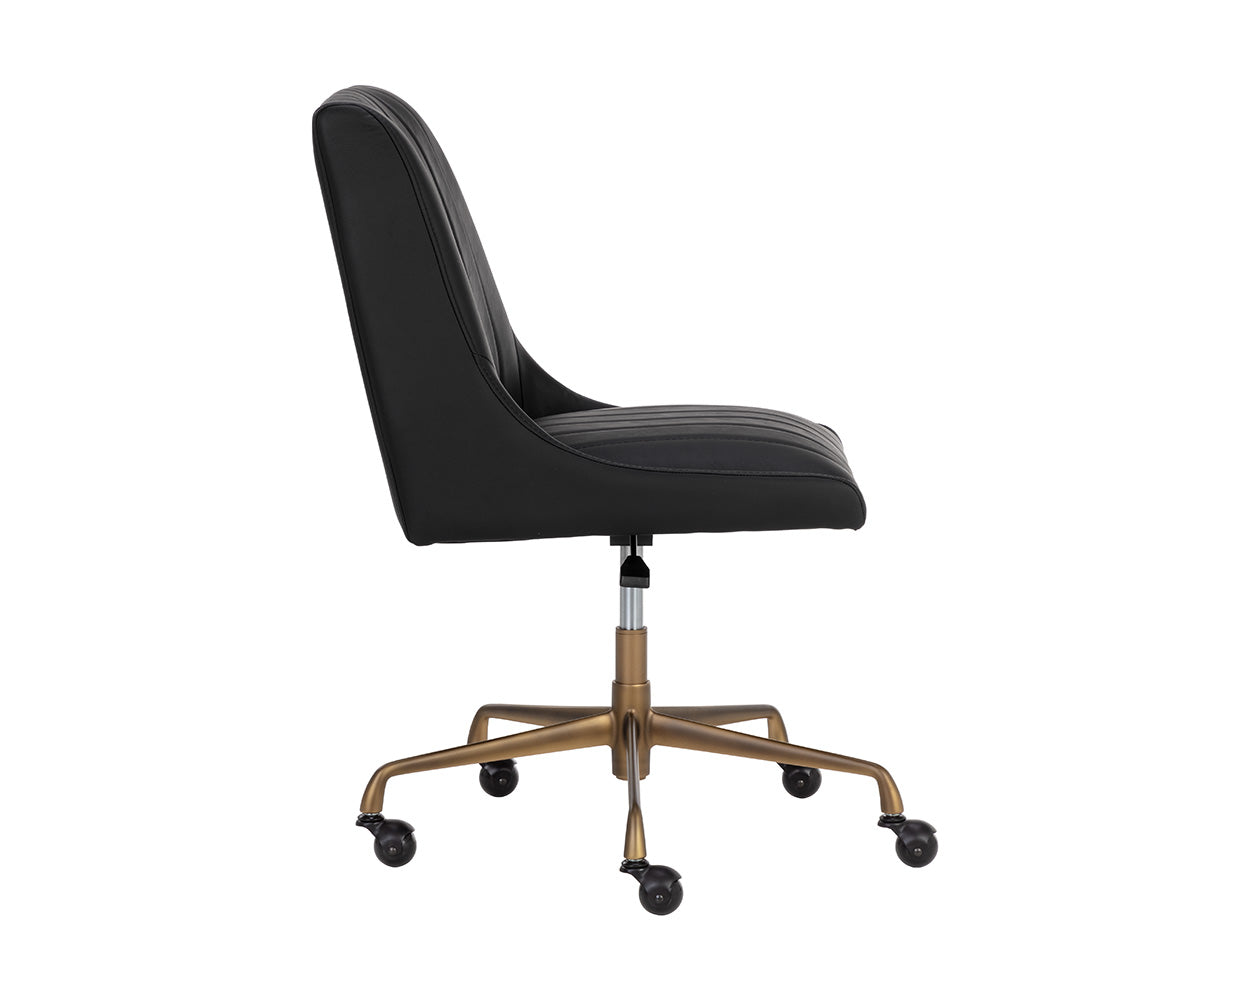 Halden Office Chair